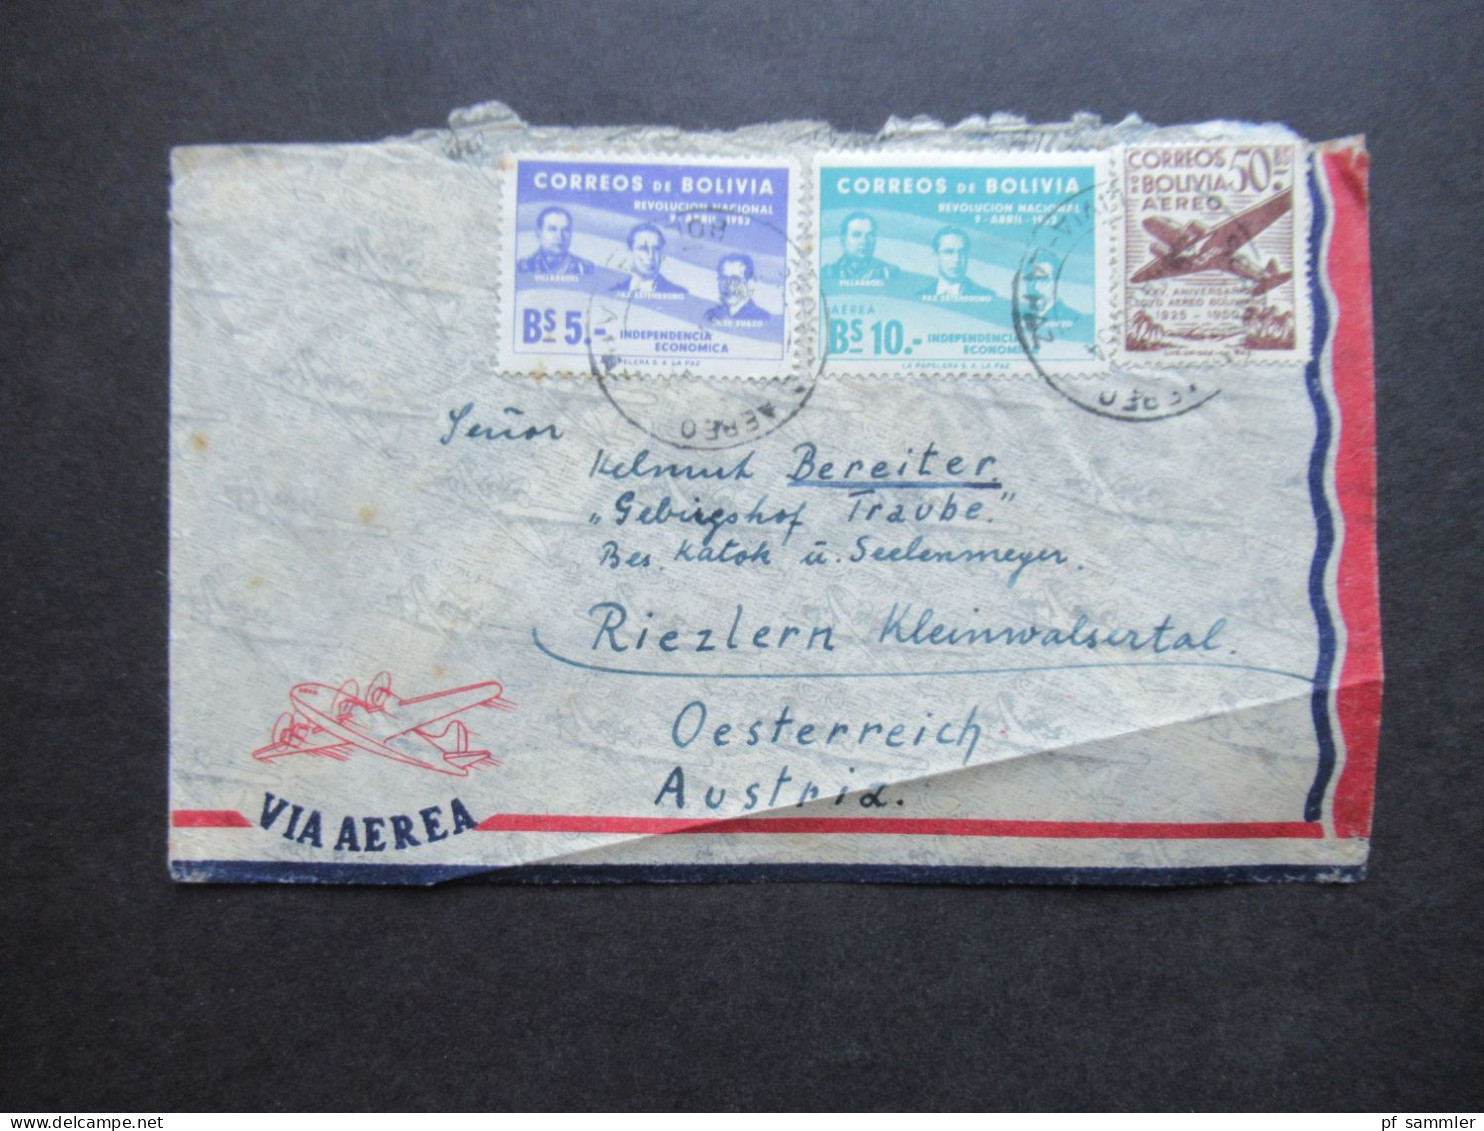 Bolivien 1954 Via Aerea / Luftpost Nach Riezlern Österreich Mit Bahnpoststempel Lindau - Nürnberg Zug 00873 - Bolivie